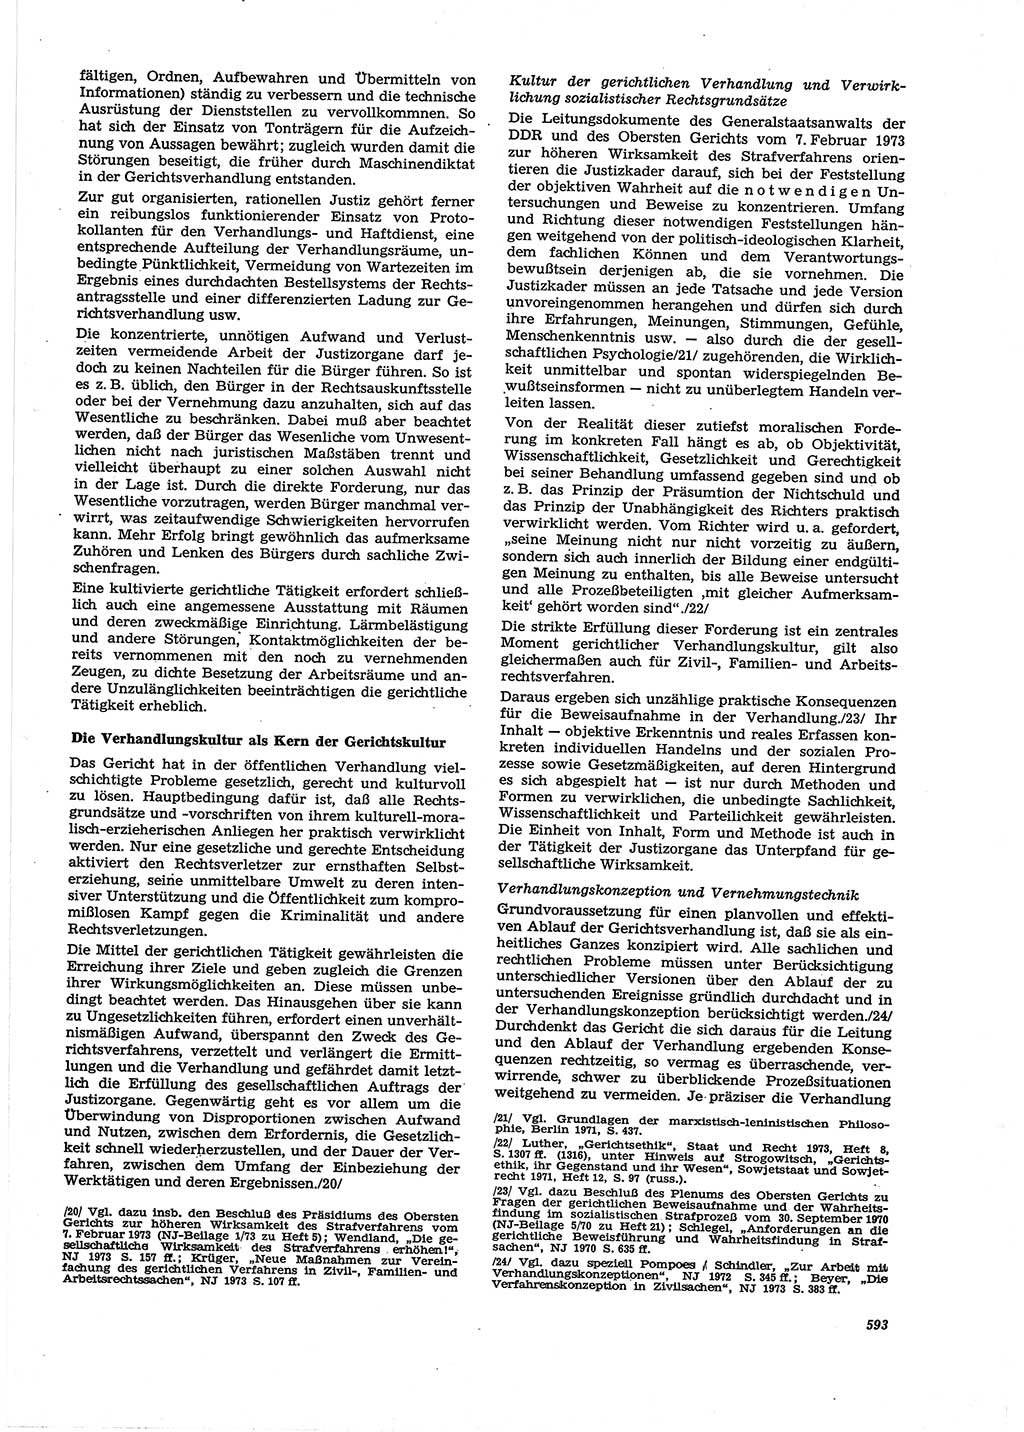 Neue Justiz (NJ), Zeitschrift für Recht und Rechtswissenschaft [Deutsche Demokratische Republik (DDR)], 27. Jahrgang 1973, Seite 593 (NJ DDR 1973, S. 593)